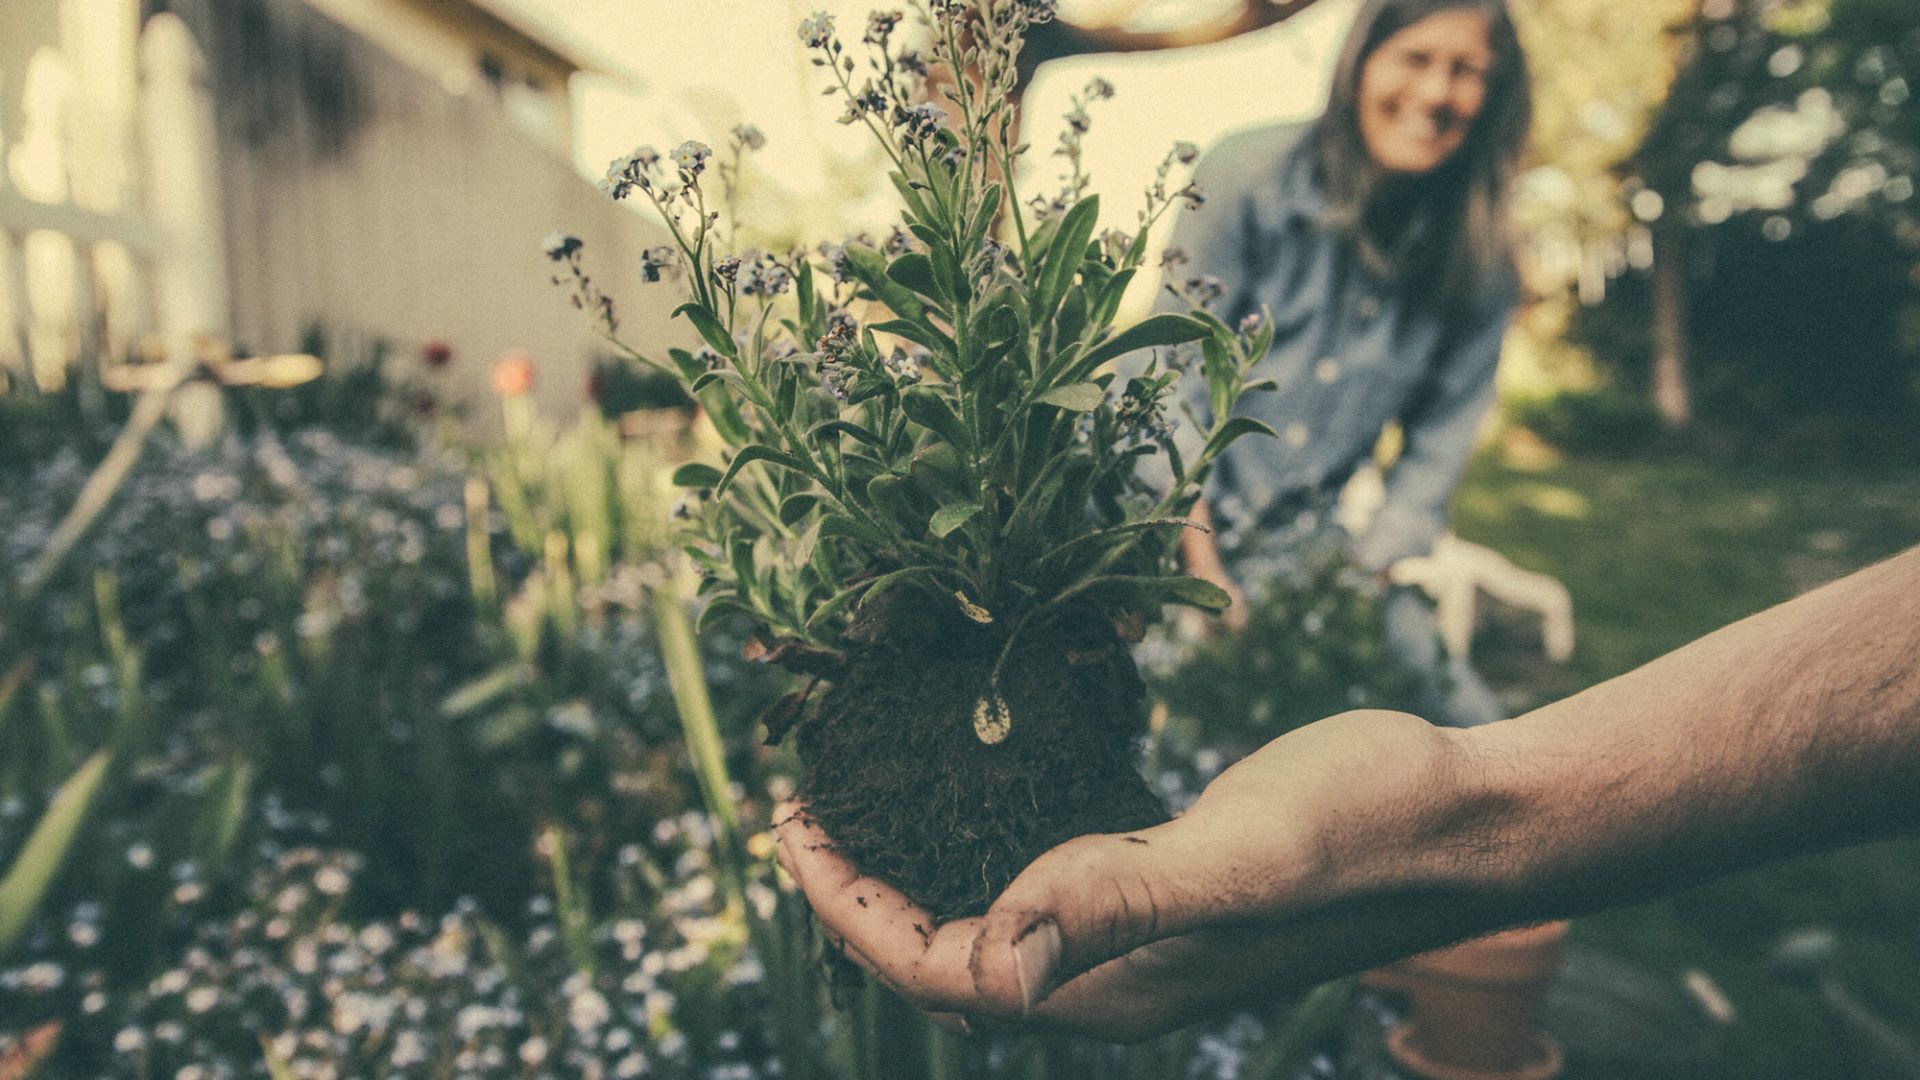 Lennar Atlanta Spring gardening tips